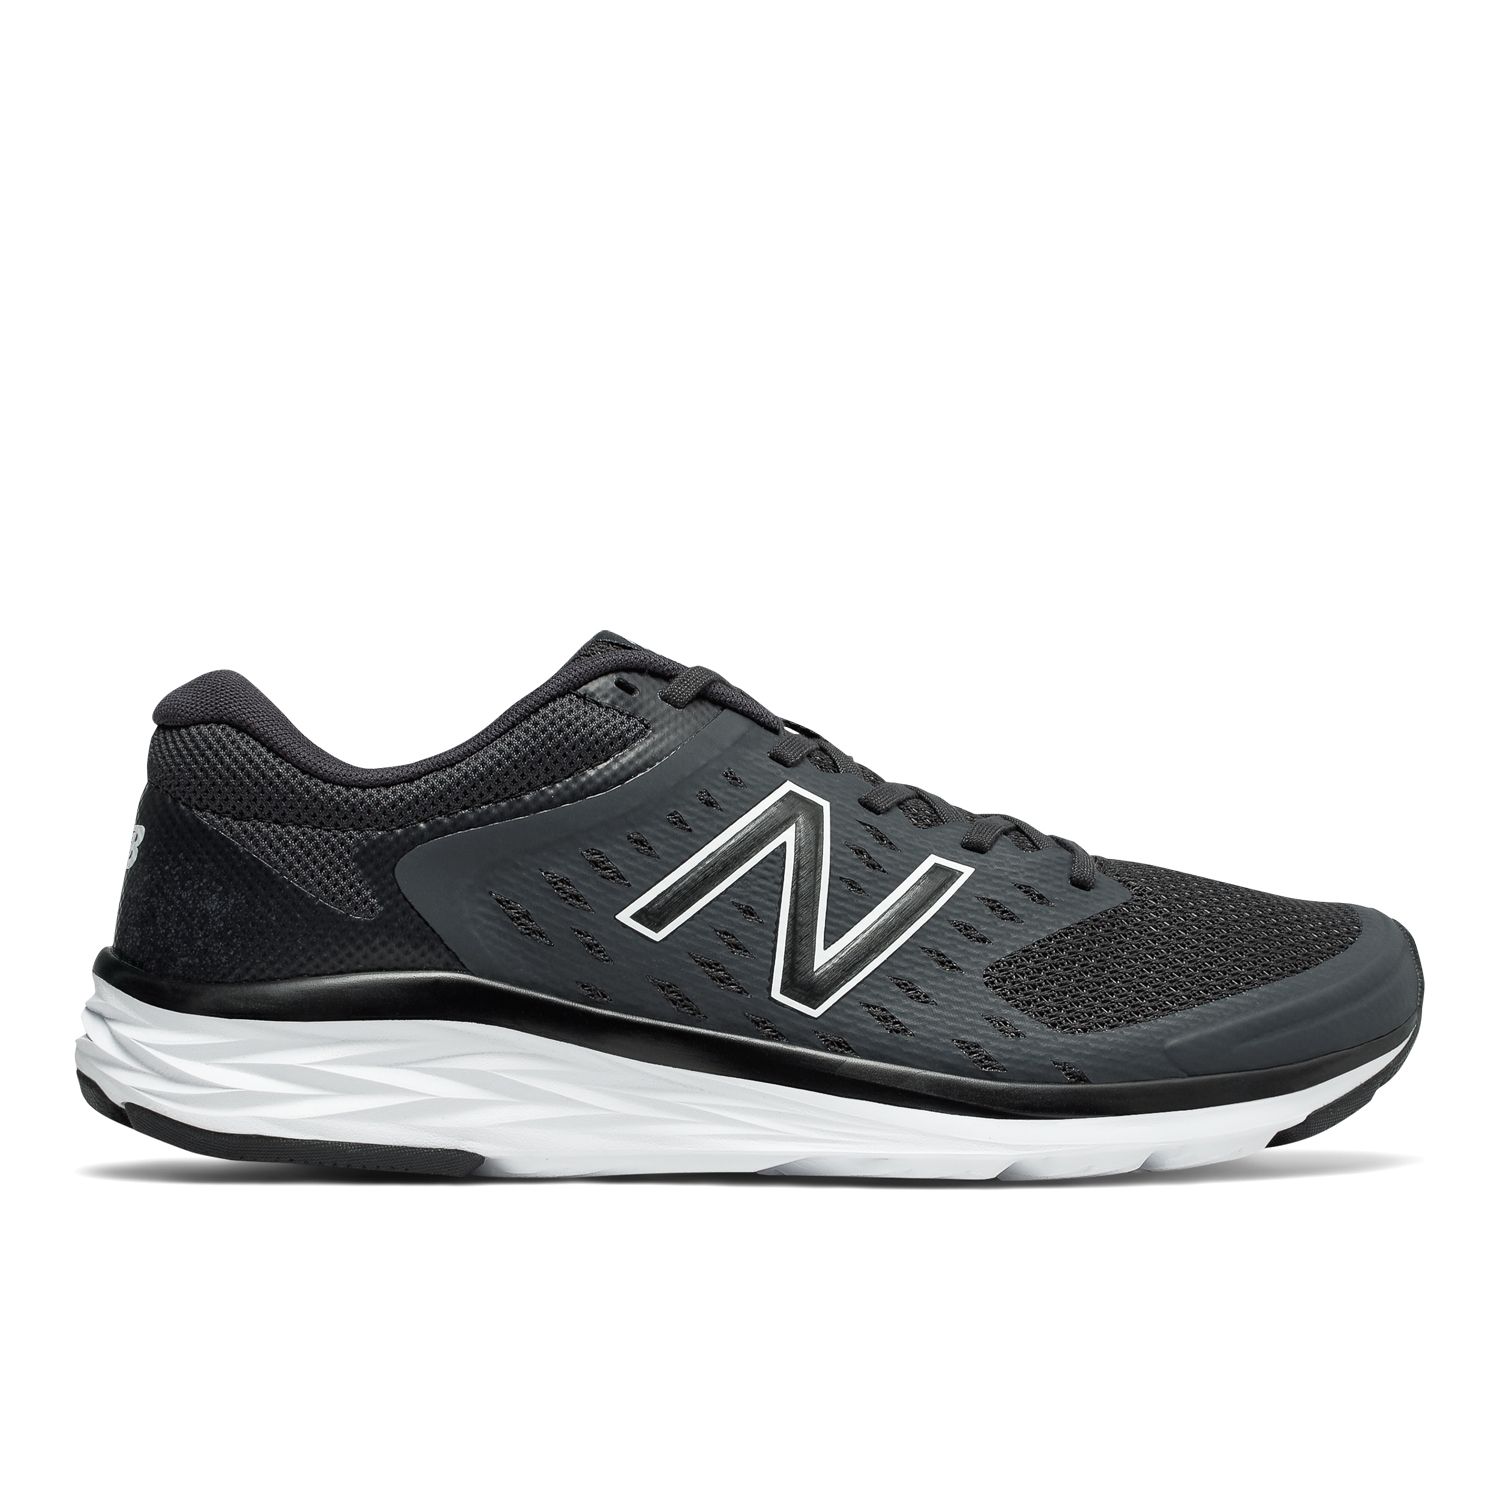 New Balance 490 v5 Men's Running Shoes